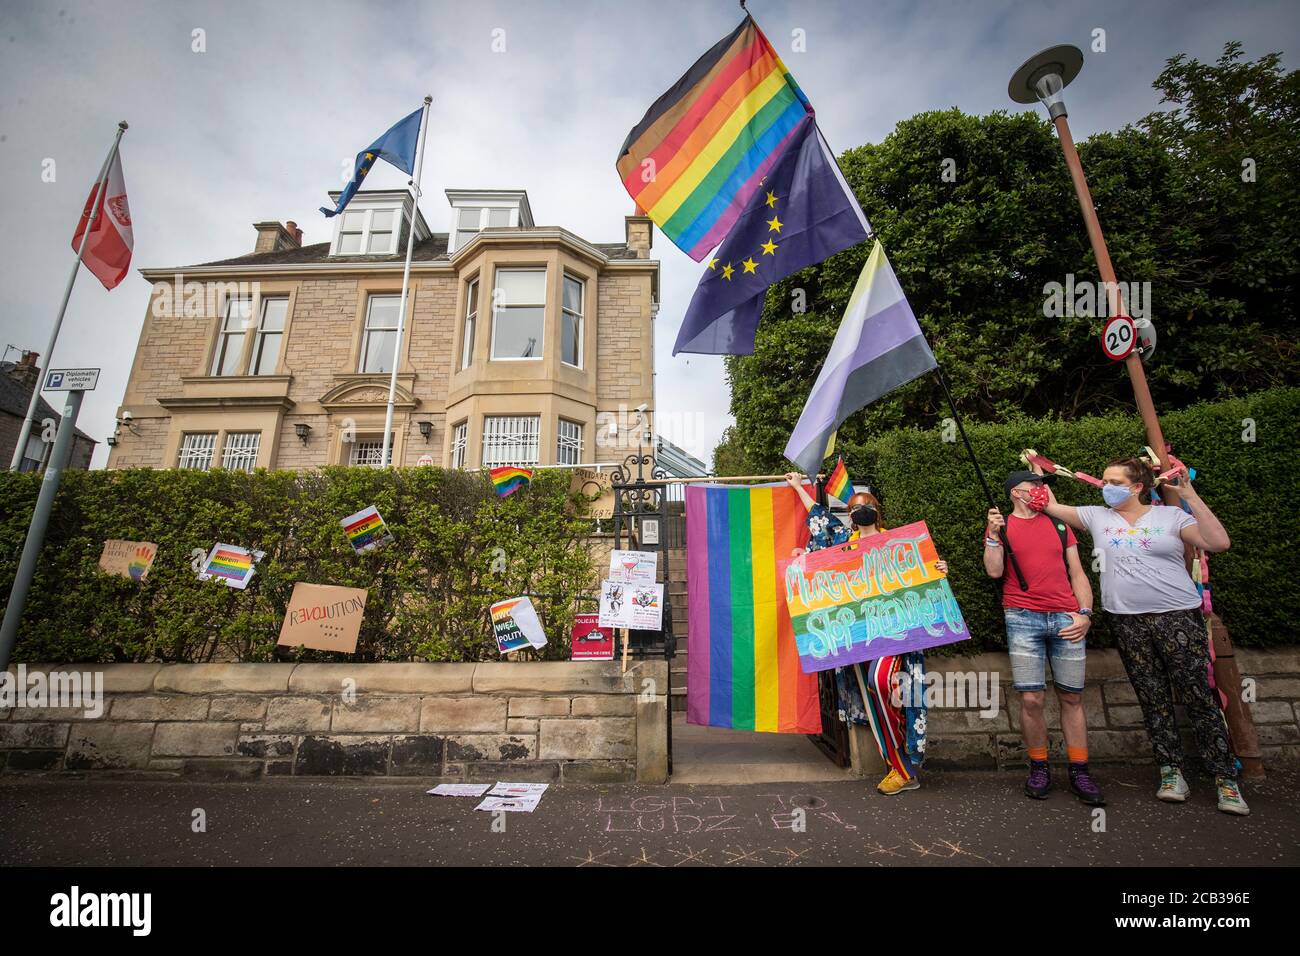 Mitglieder der LGBT-Gemeinschaft protestieren vor dem polnischen Konsulat in Edinburgh, um gegen den neu gewählten Präsidenten Polens, Andrzej Duda, zu demonstrieren, dem vorgeworfen wird, eine Kampagne mit homophober Rhetorik geführt zu haben. Stockfoto